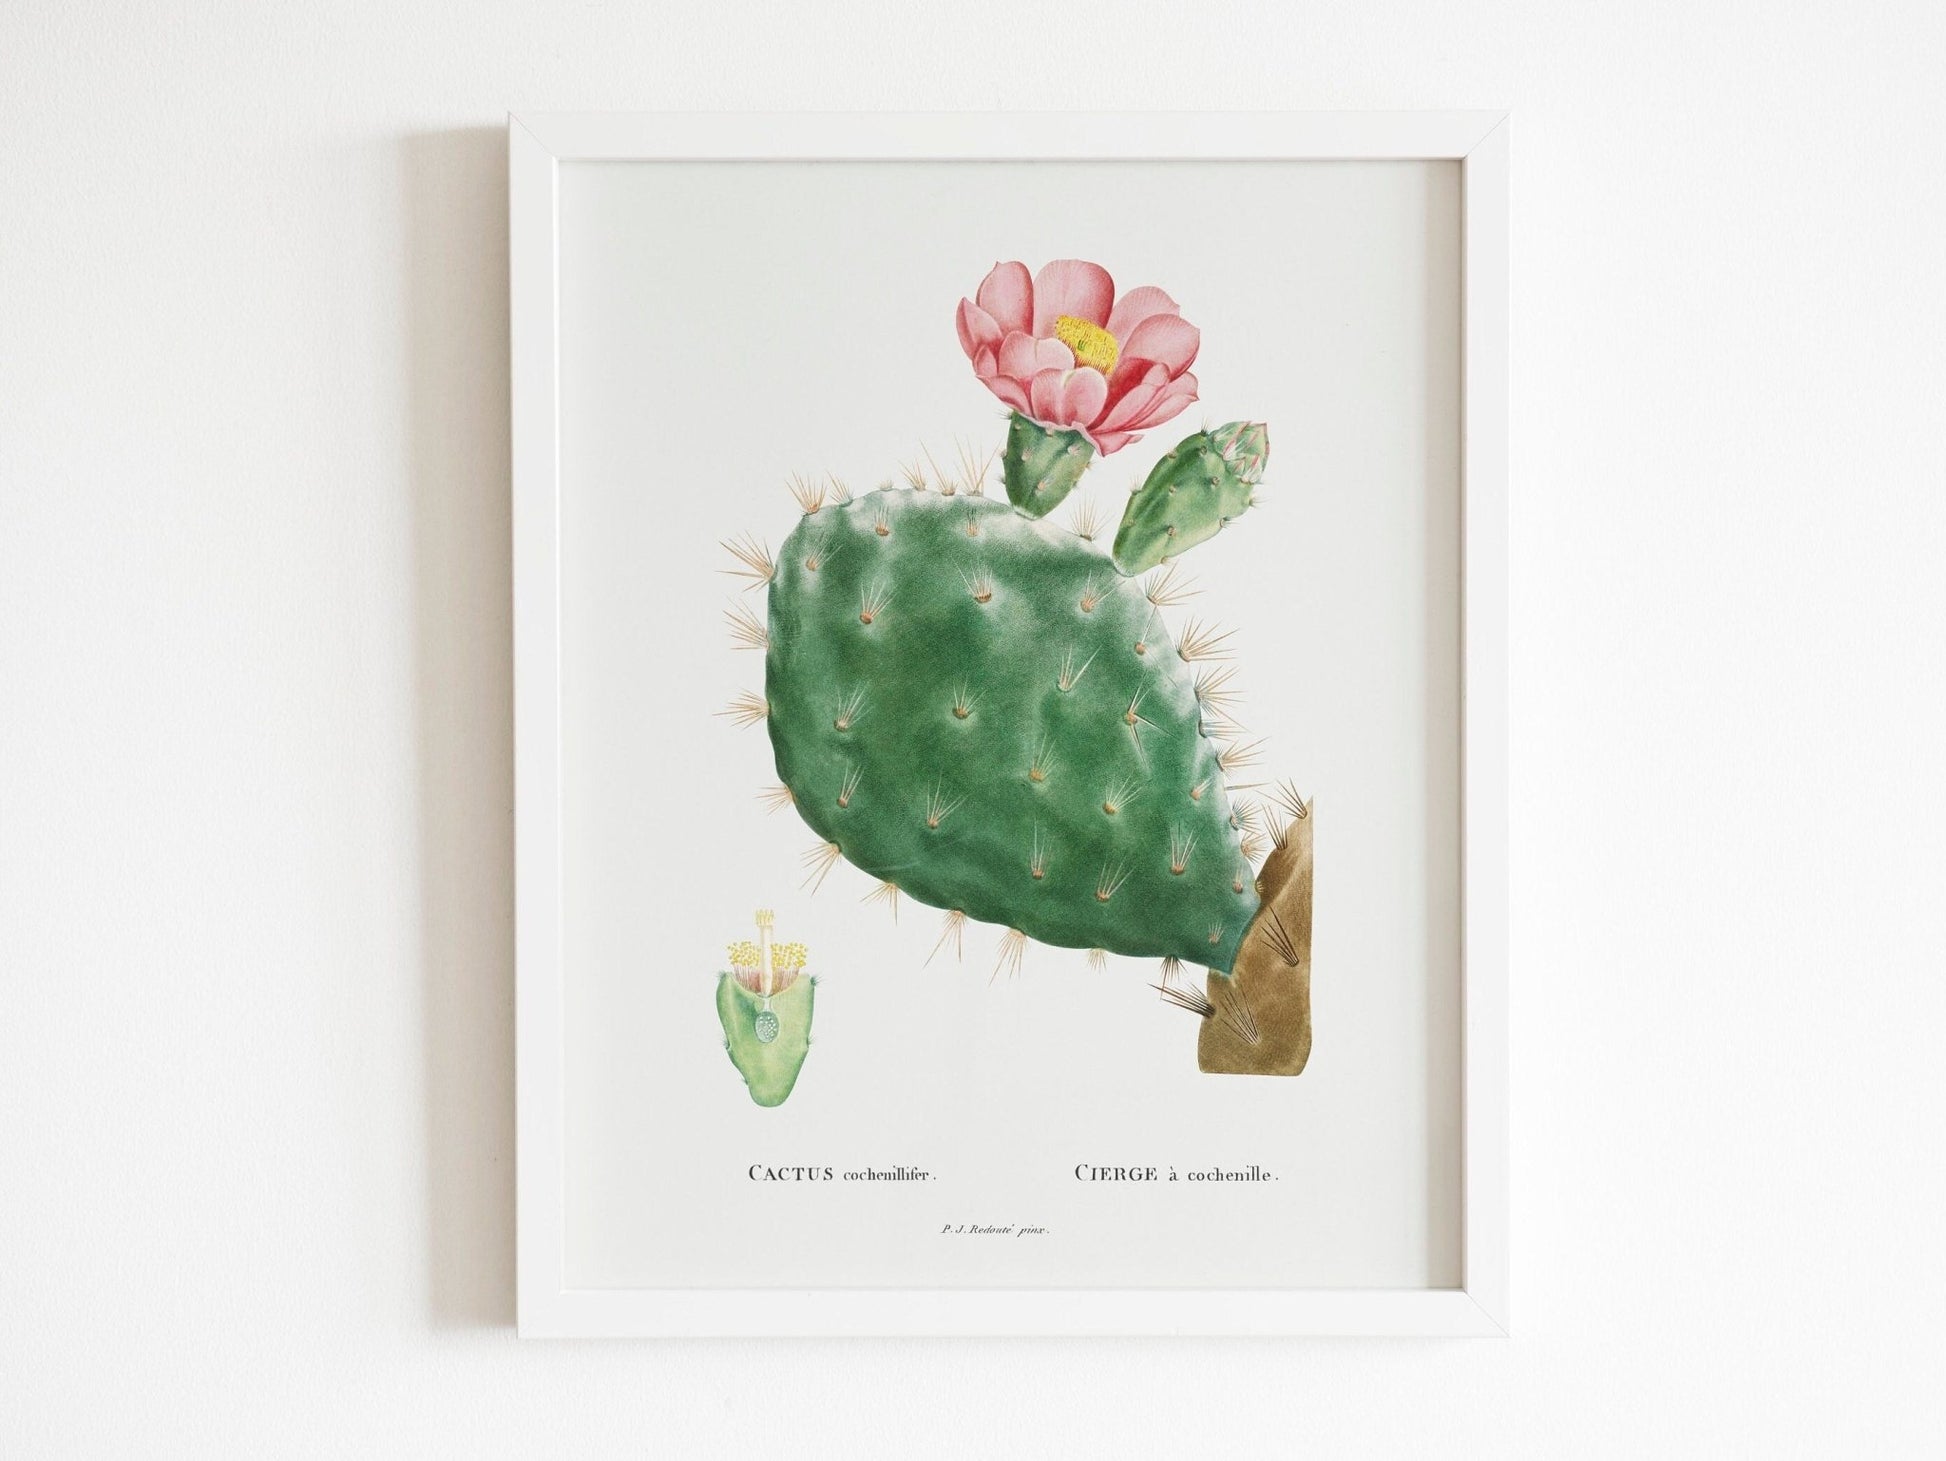 Set of 3 Cacti Prints by Pierre - Joseph Redouté (Raphael of Flowers) - Pathos Studio - Art Print Sets